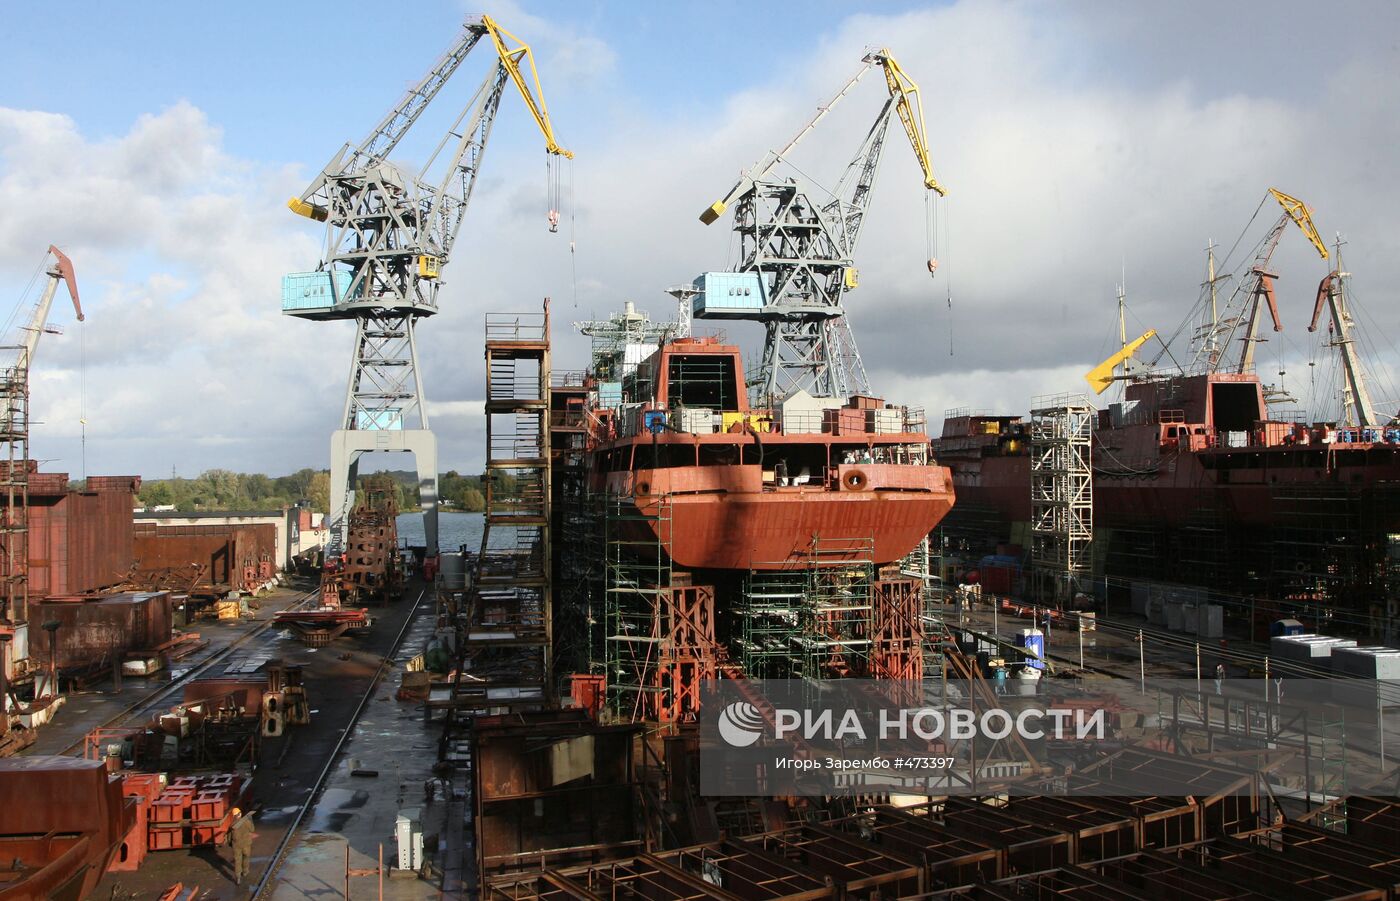 Судостроительный завод "Янтарь" в Калининграде